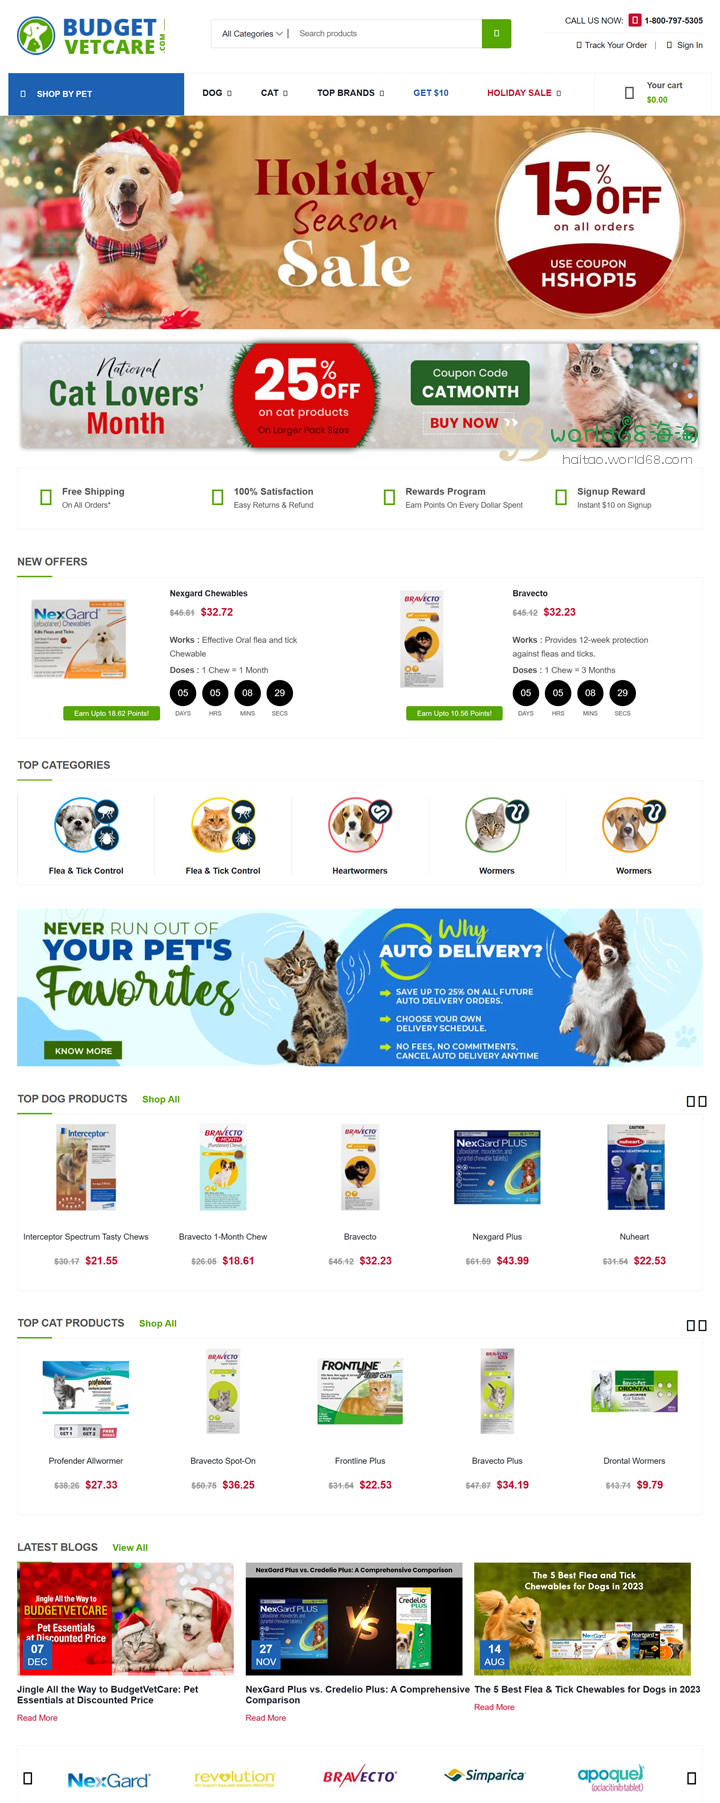 美国宠物药品网站 美国宠物平台 美